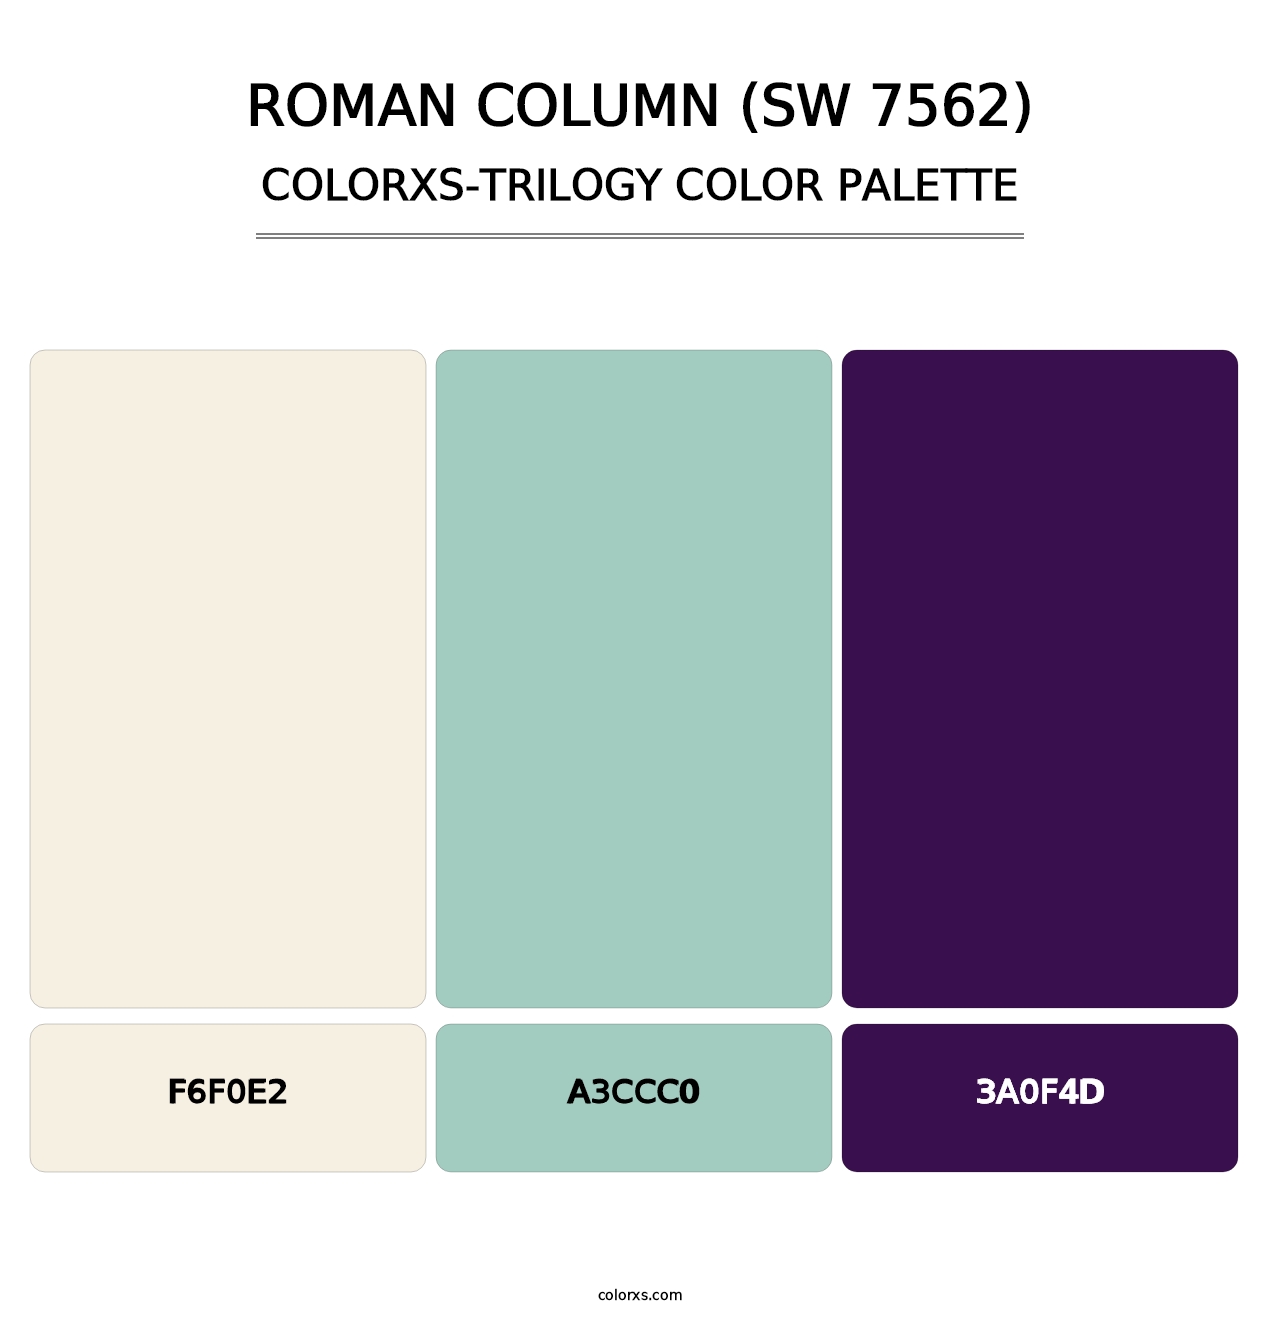 Roman Column (SW 7562) - Colorxs Trilogy Palette